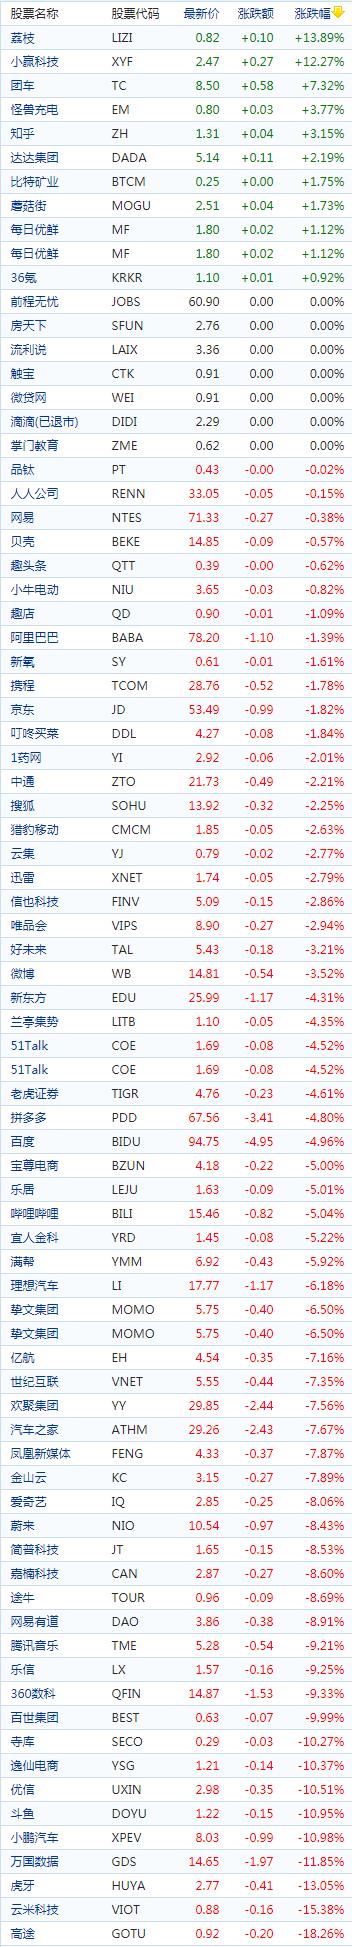 中国概念股收盘：荔枝绩后涨近14%，腾讯概念股普跌虎牙跌13%